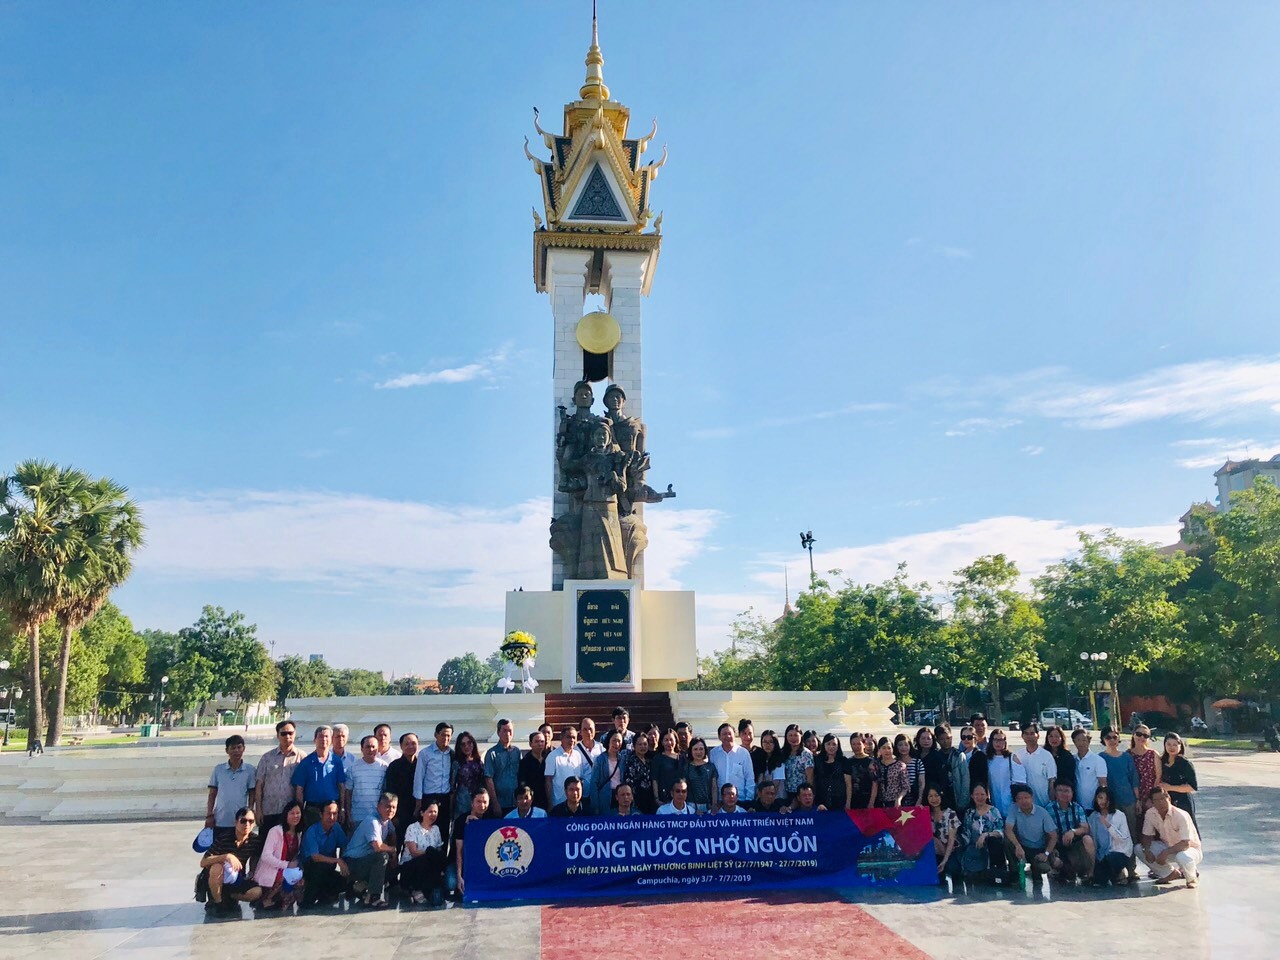 Đoàn “Về nguồn” chụp ảnh lưu niệm tại Đài tưởng niệm quân Tình nguyện Việt Nam tại Campuchia